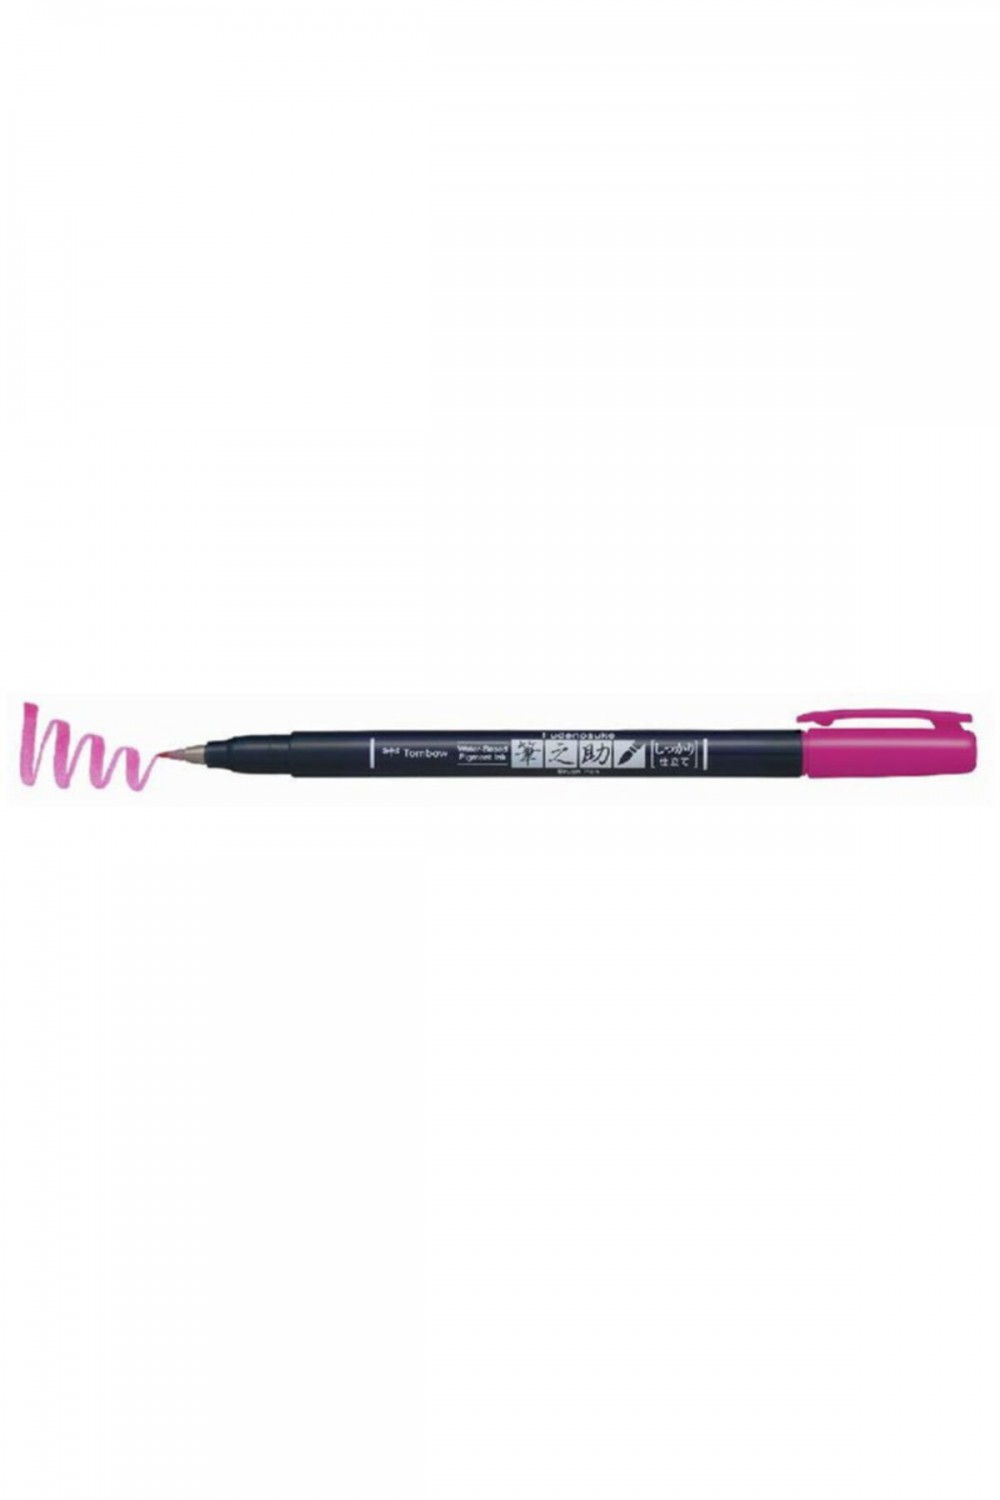 Tombow Fudenosuke Brush Pen Fırça Uçlu Kalem Sert Uç - Pembe